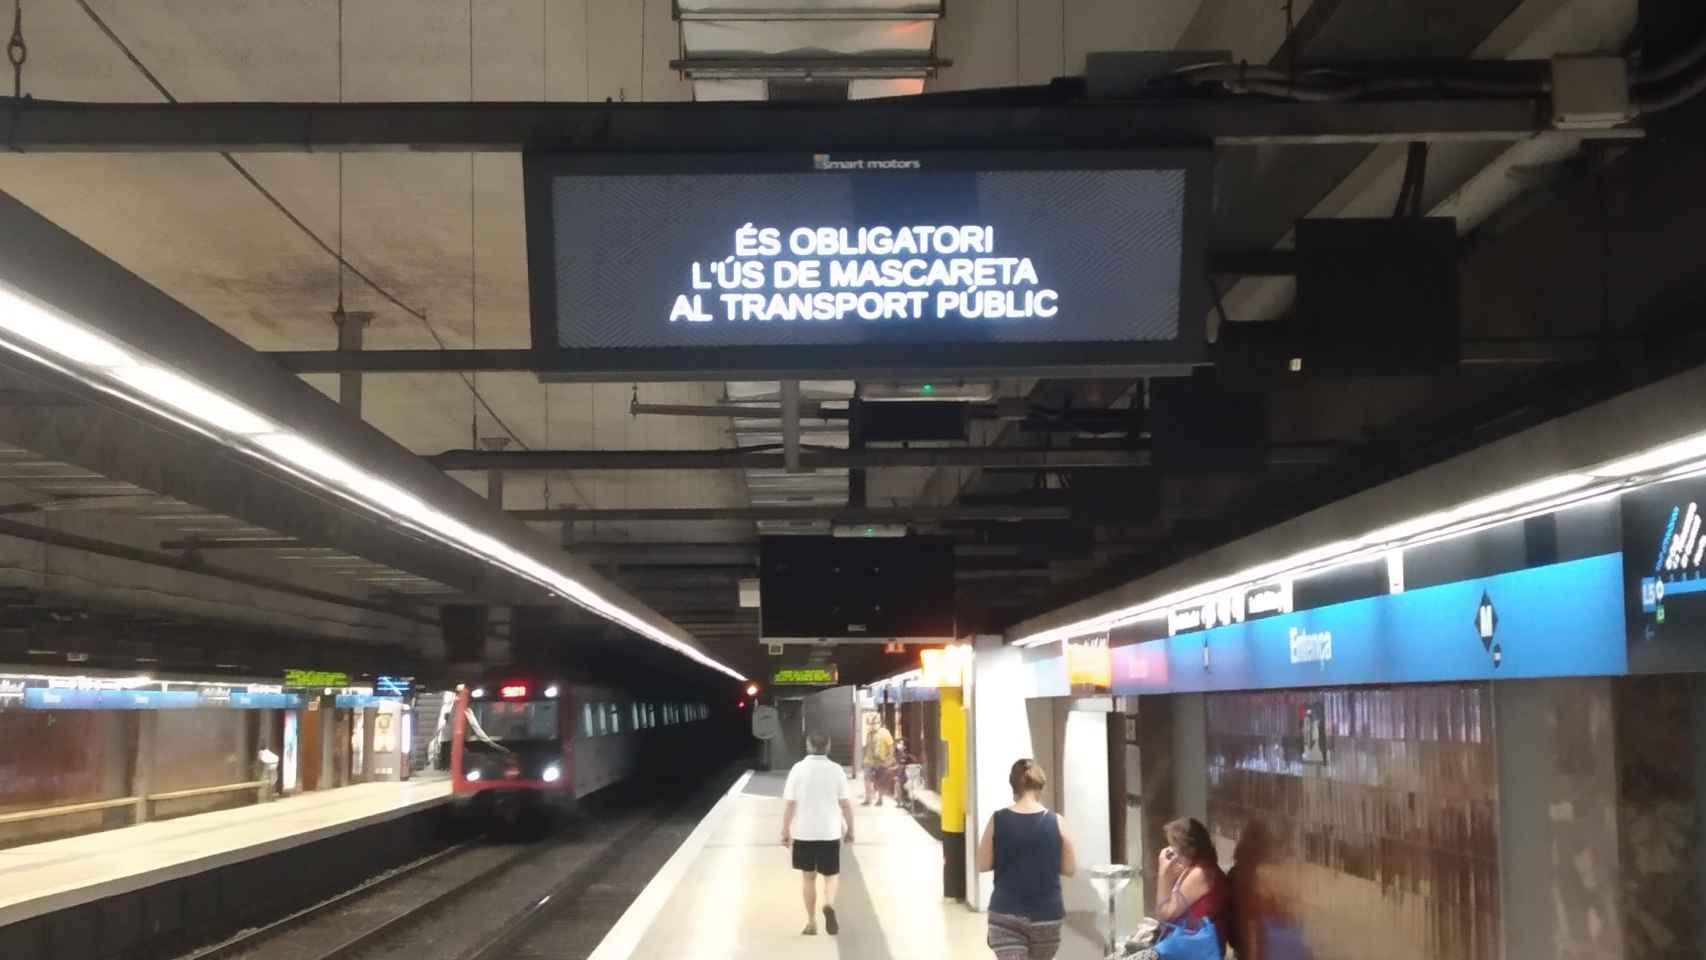 Anuncio en el metro de Barcelona con la obligación de llevar mascarilla / JORDI SUBIRANA